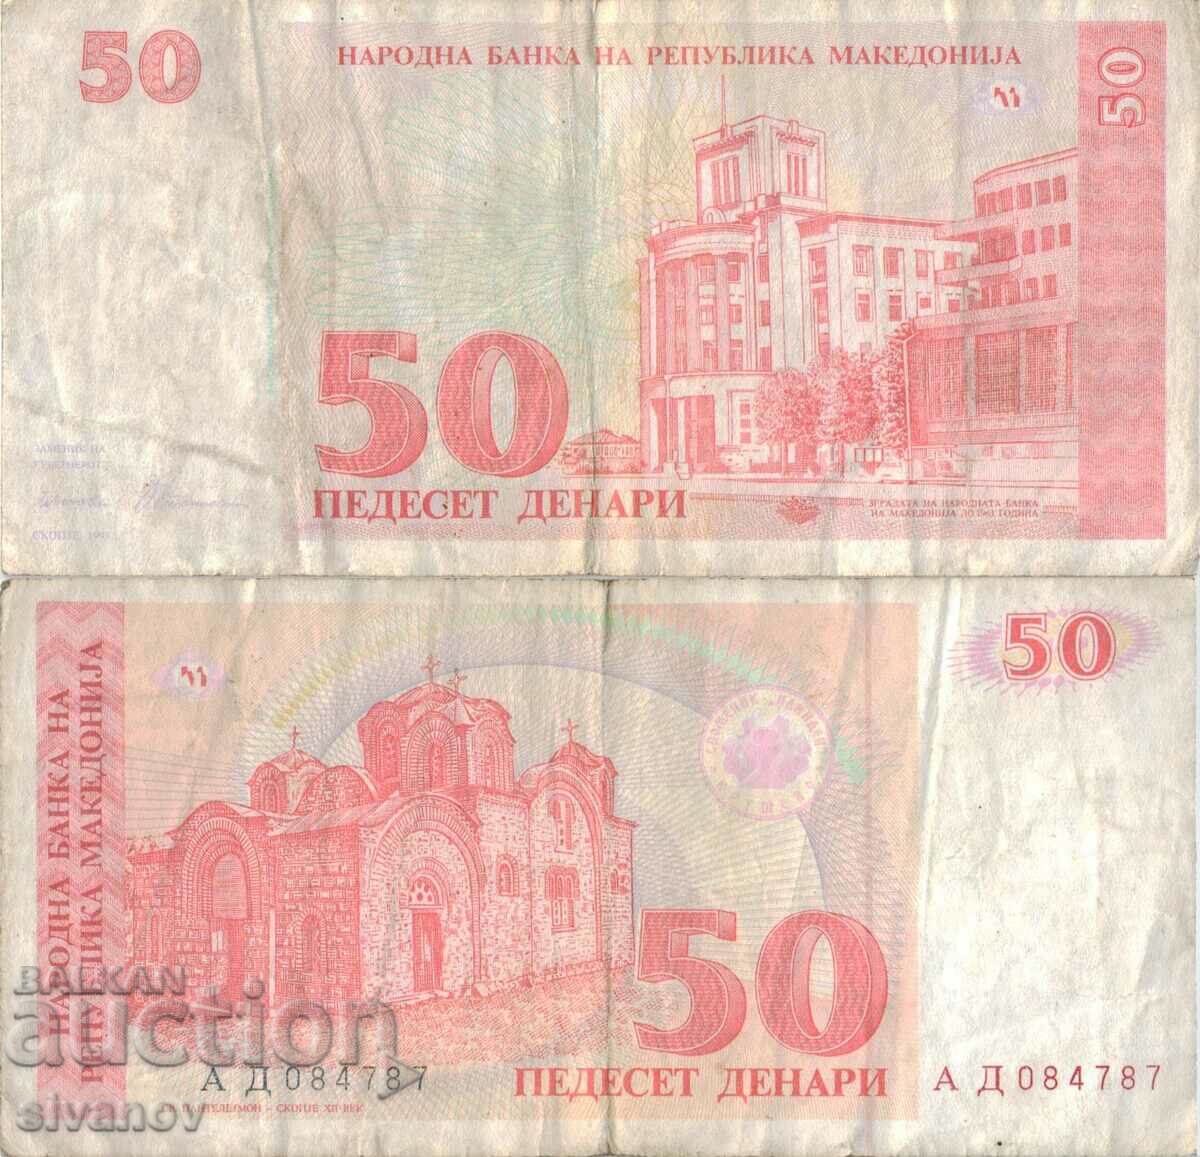 Македония 50 денара 1993 година банкнота  #5219